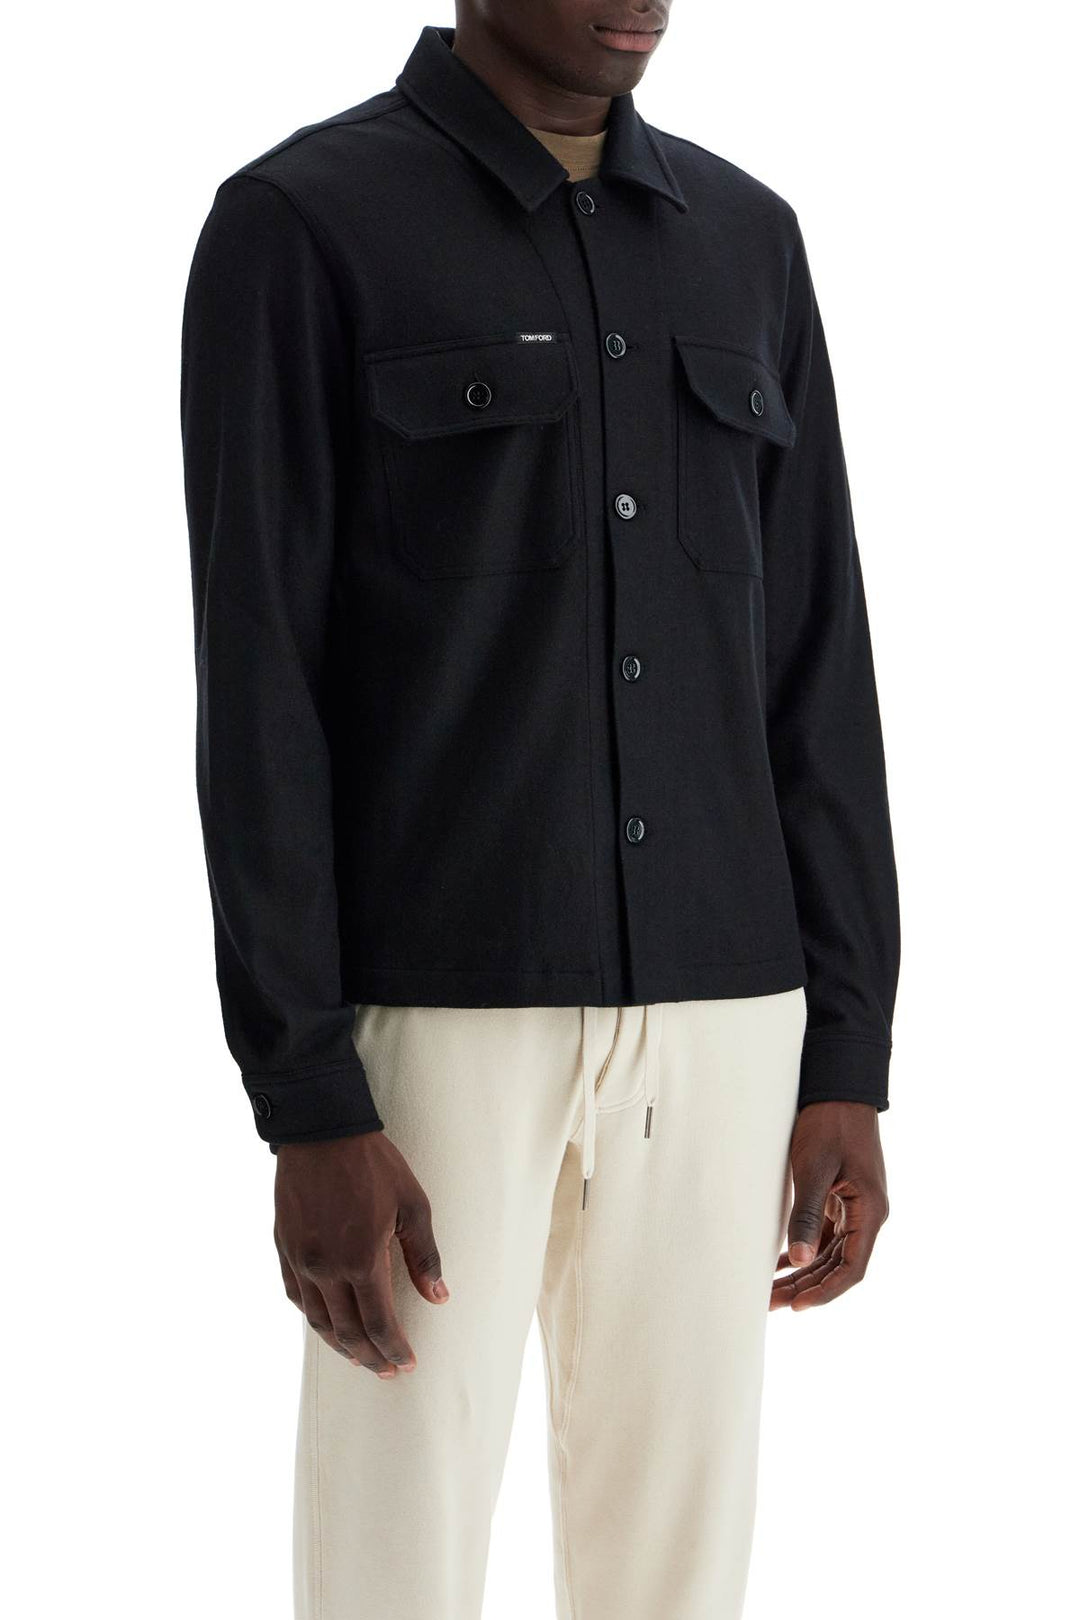 Tom Ford Cashmere Jacket For Men   Black